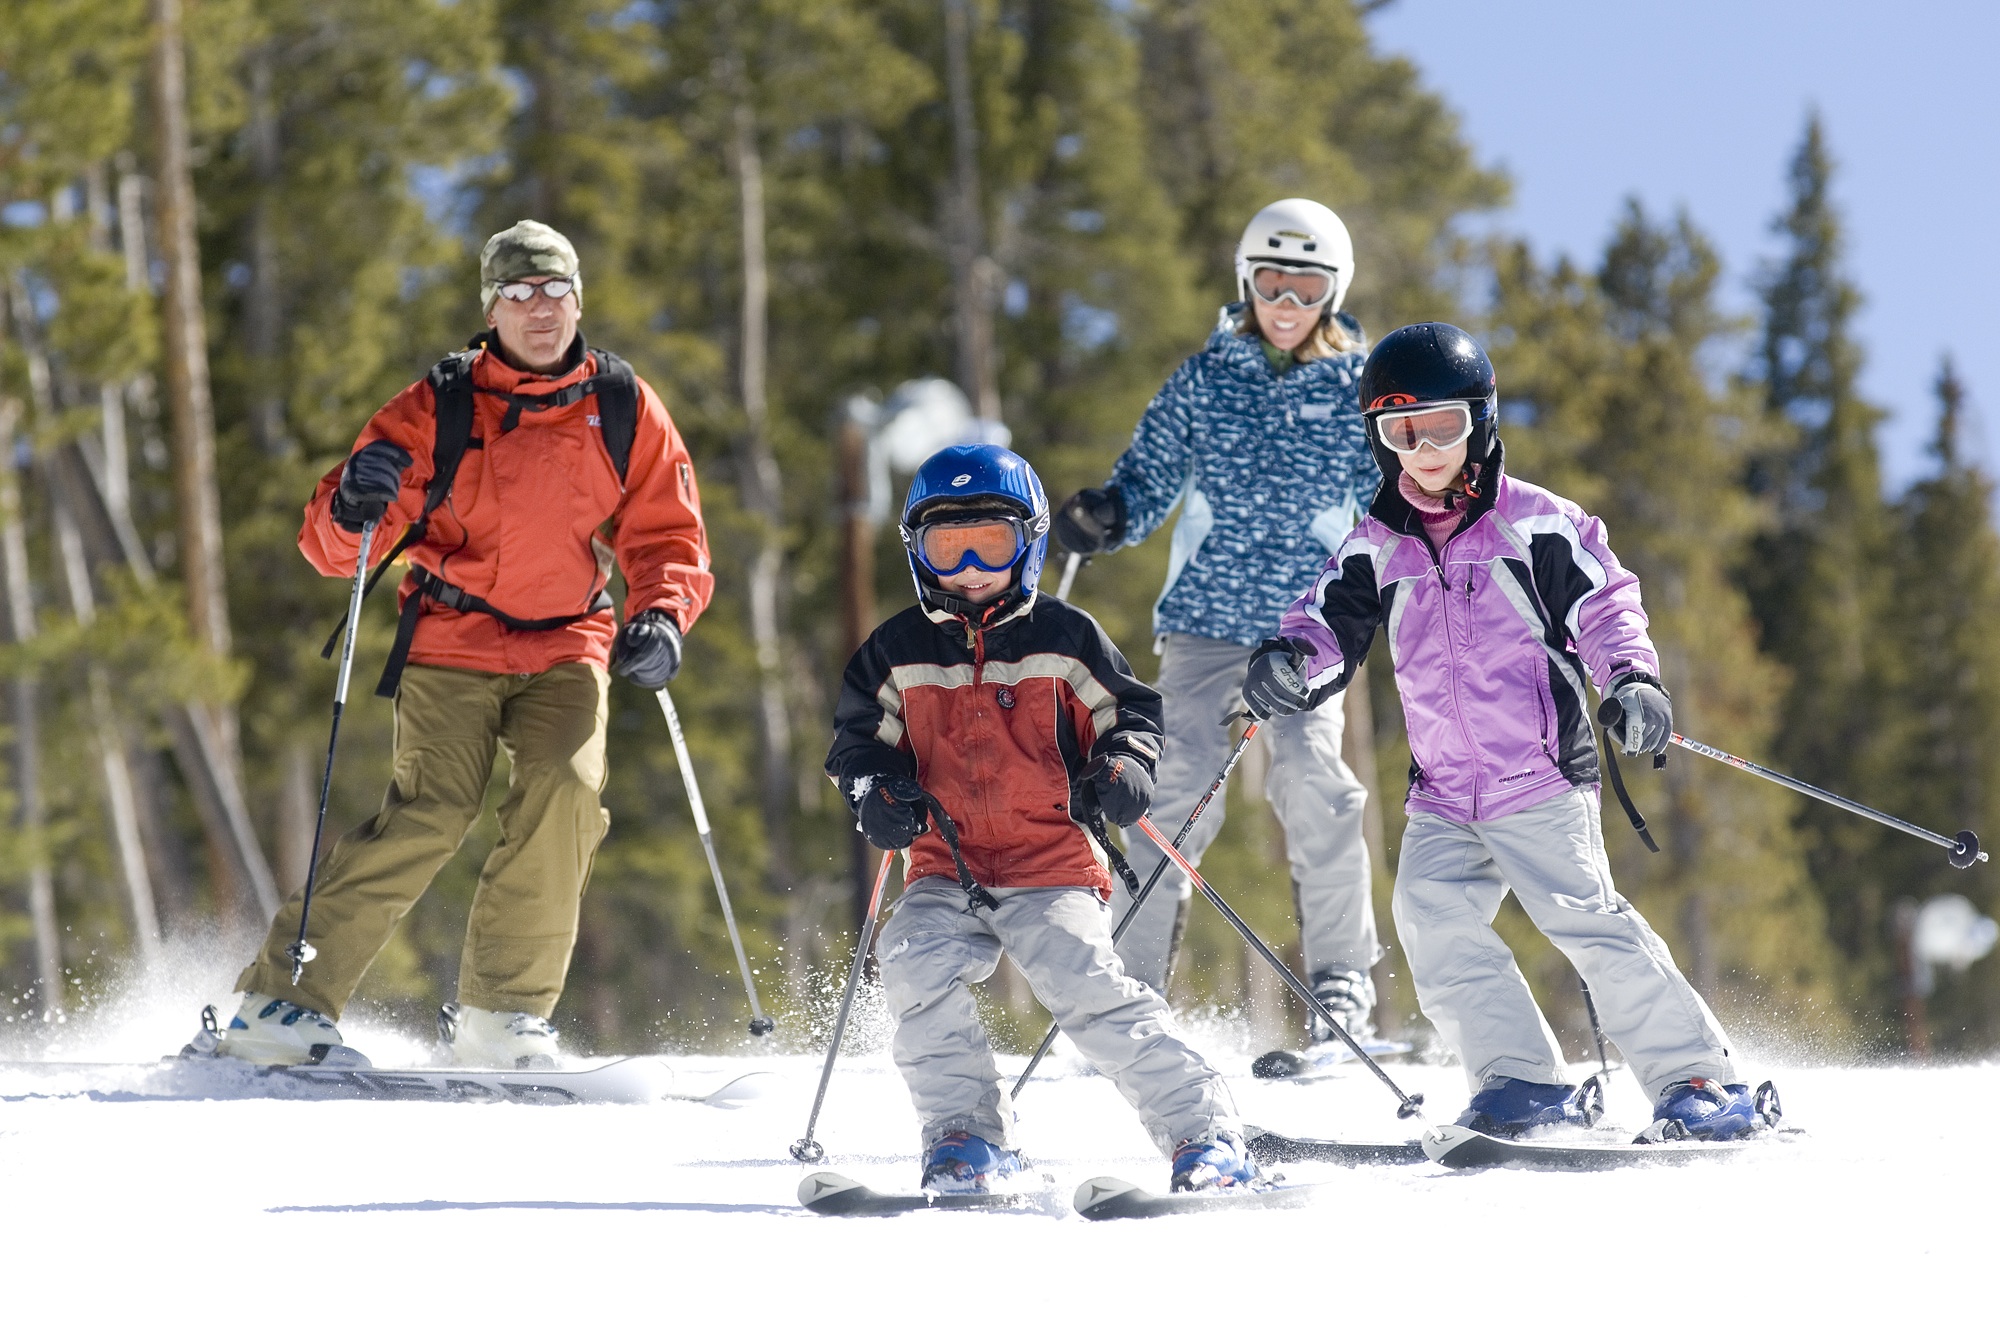 Семья лыжников. Прогулка семьей на лыжах. Семья катается на лыжах. Дети на горных лыжах. Катание на лыжах дети.